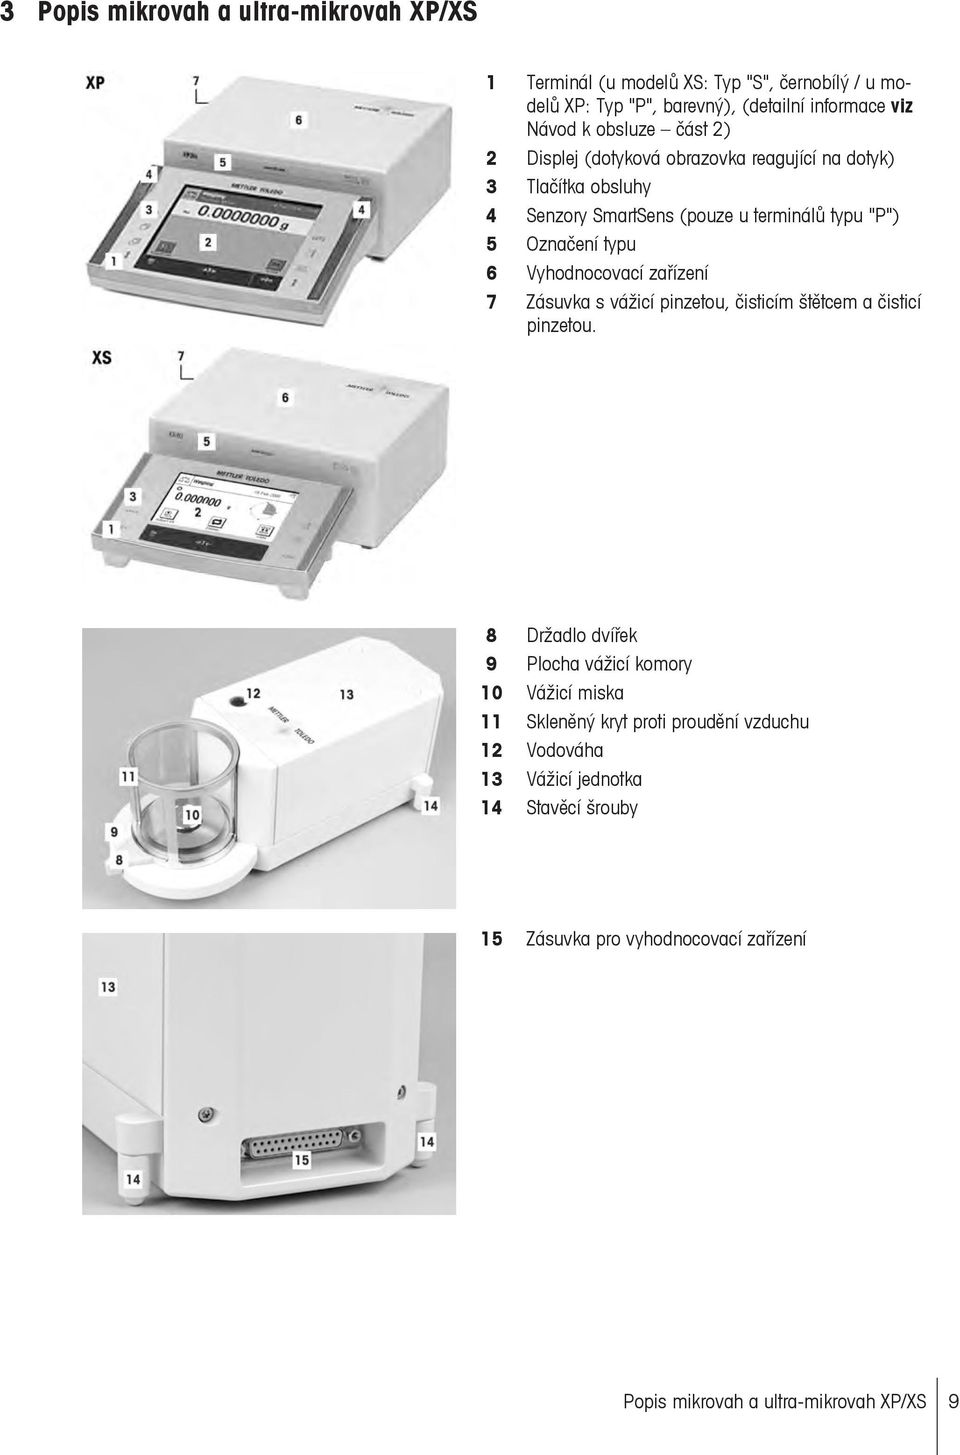 Vyhodnocovací zařízení 7 Zásuvka s vážicí pinzetou, čisticím štětcem a čisticí pinzetou.